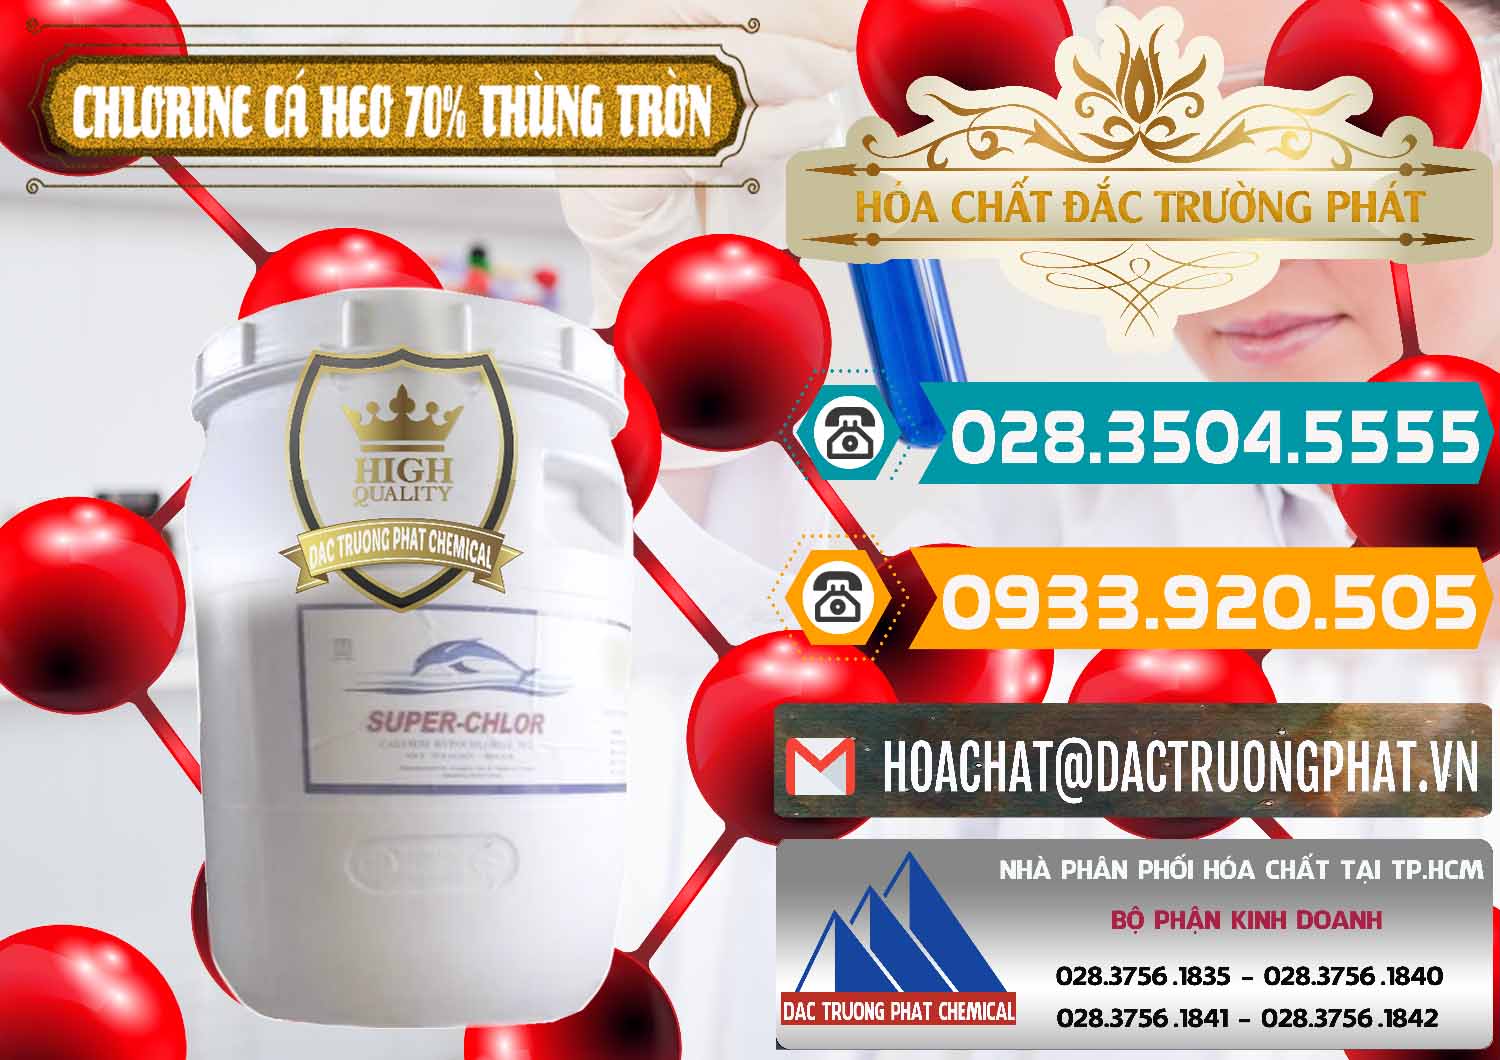 Cty chuyên phân phối _ bán Clorin - Chlorine Cá Heo 70% Super Chlor Thùng Tròn Nắp Trắng Trung Quốc China - 0239 - Cty cung cấp và nhập khẩu hóa chất tại TP.HCM - congtyhoachat.vn